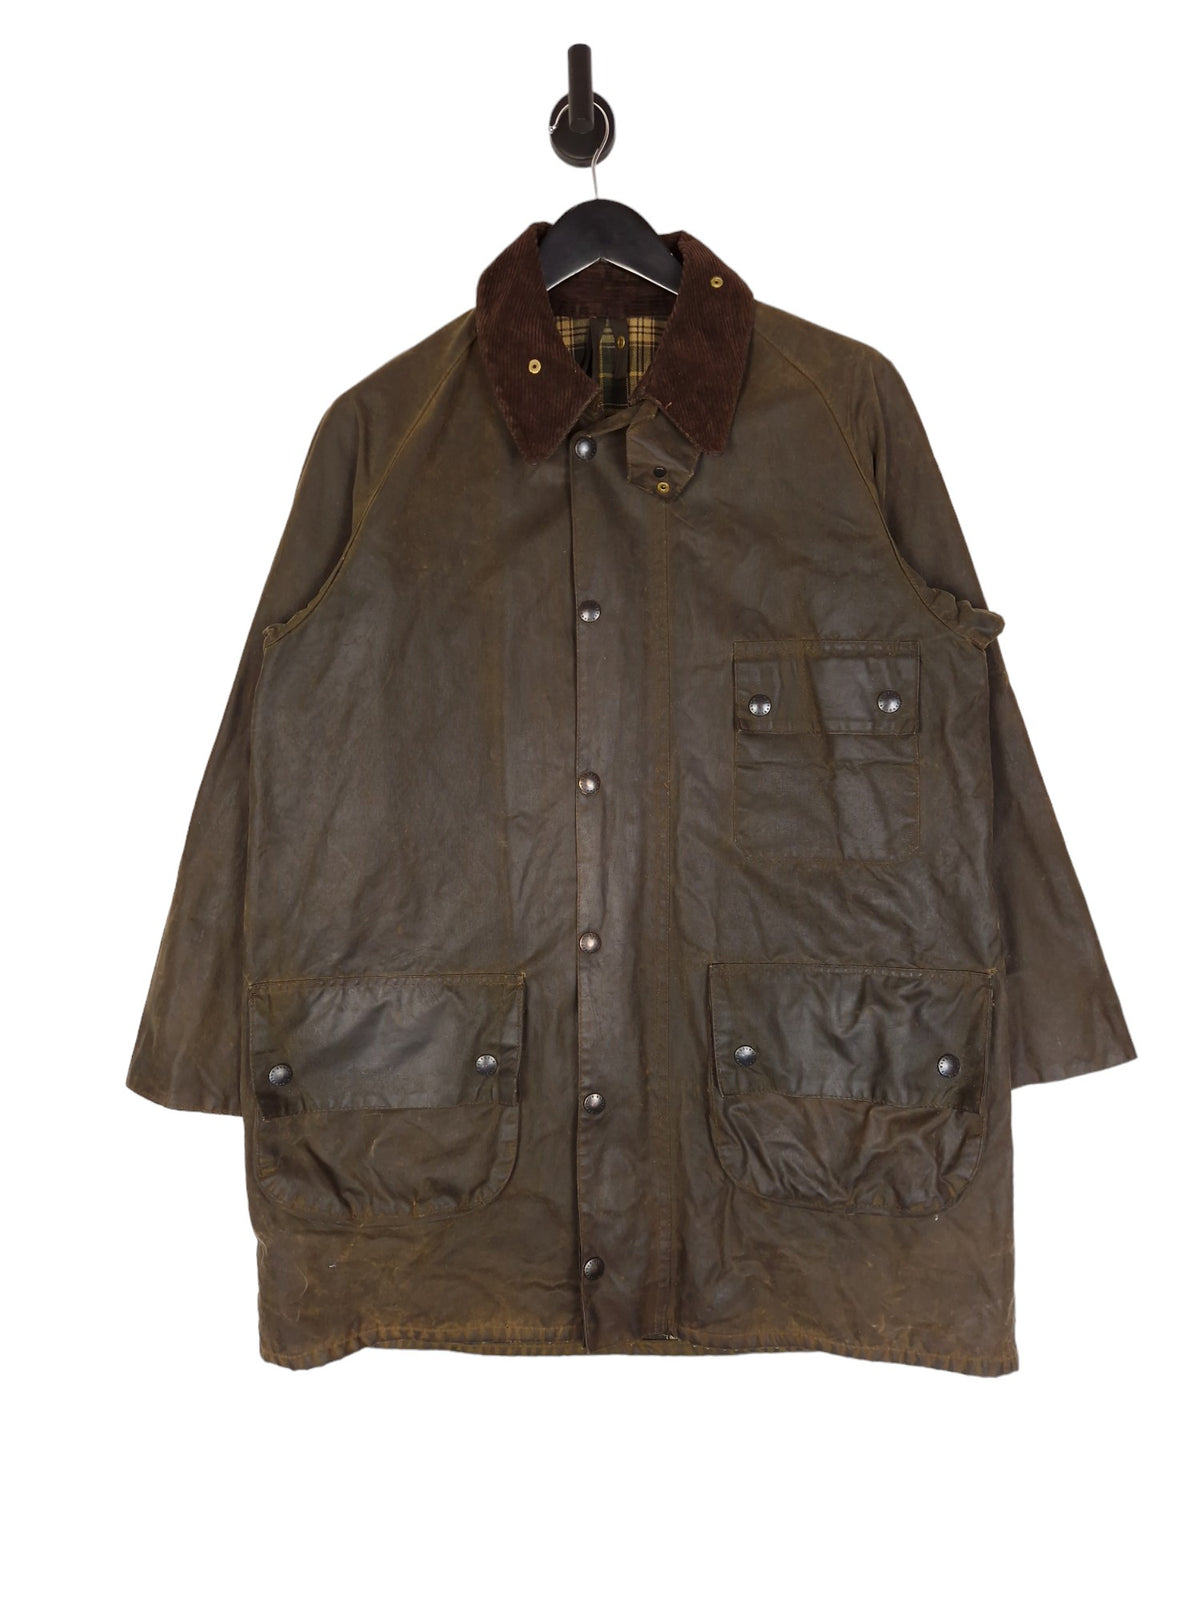 80's Barbour Solway Zipper Jacket Wax Cotton - Size 40 / Large